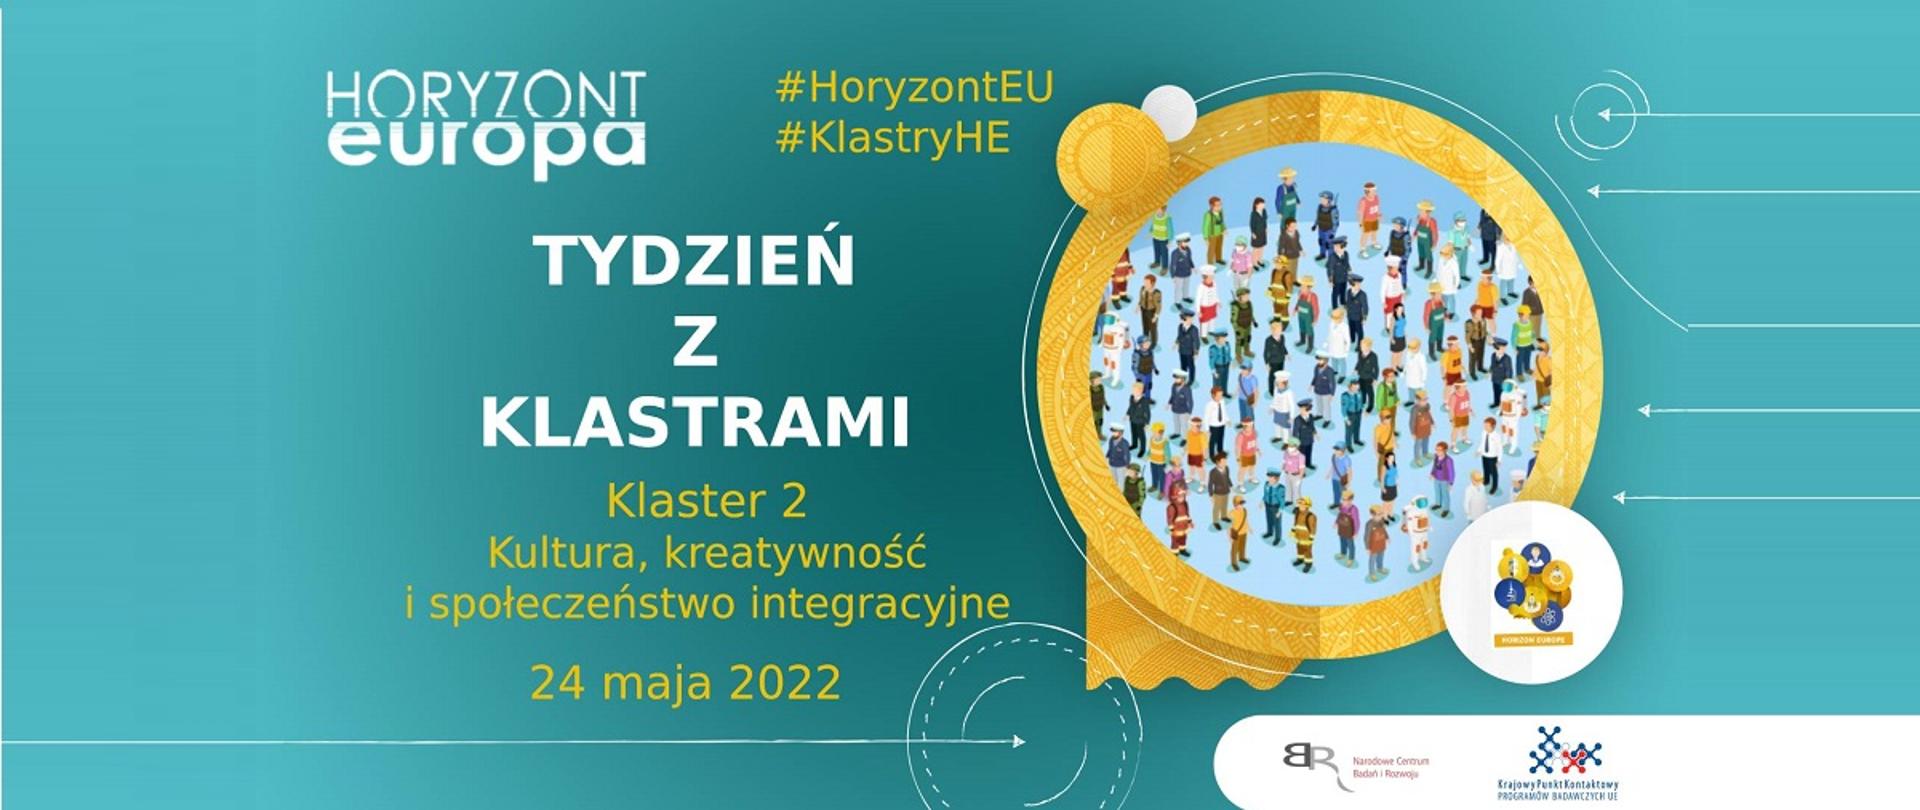 Horyzont Europa
#HoryzontEU
#KlastryHE
Tydzień z klastrami
Klaster 2
Kultura, kreatywność i społeczeństwo integracyjne
24 maja 2022